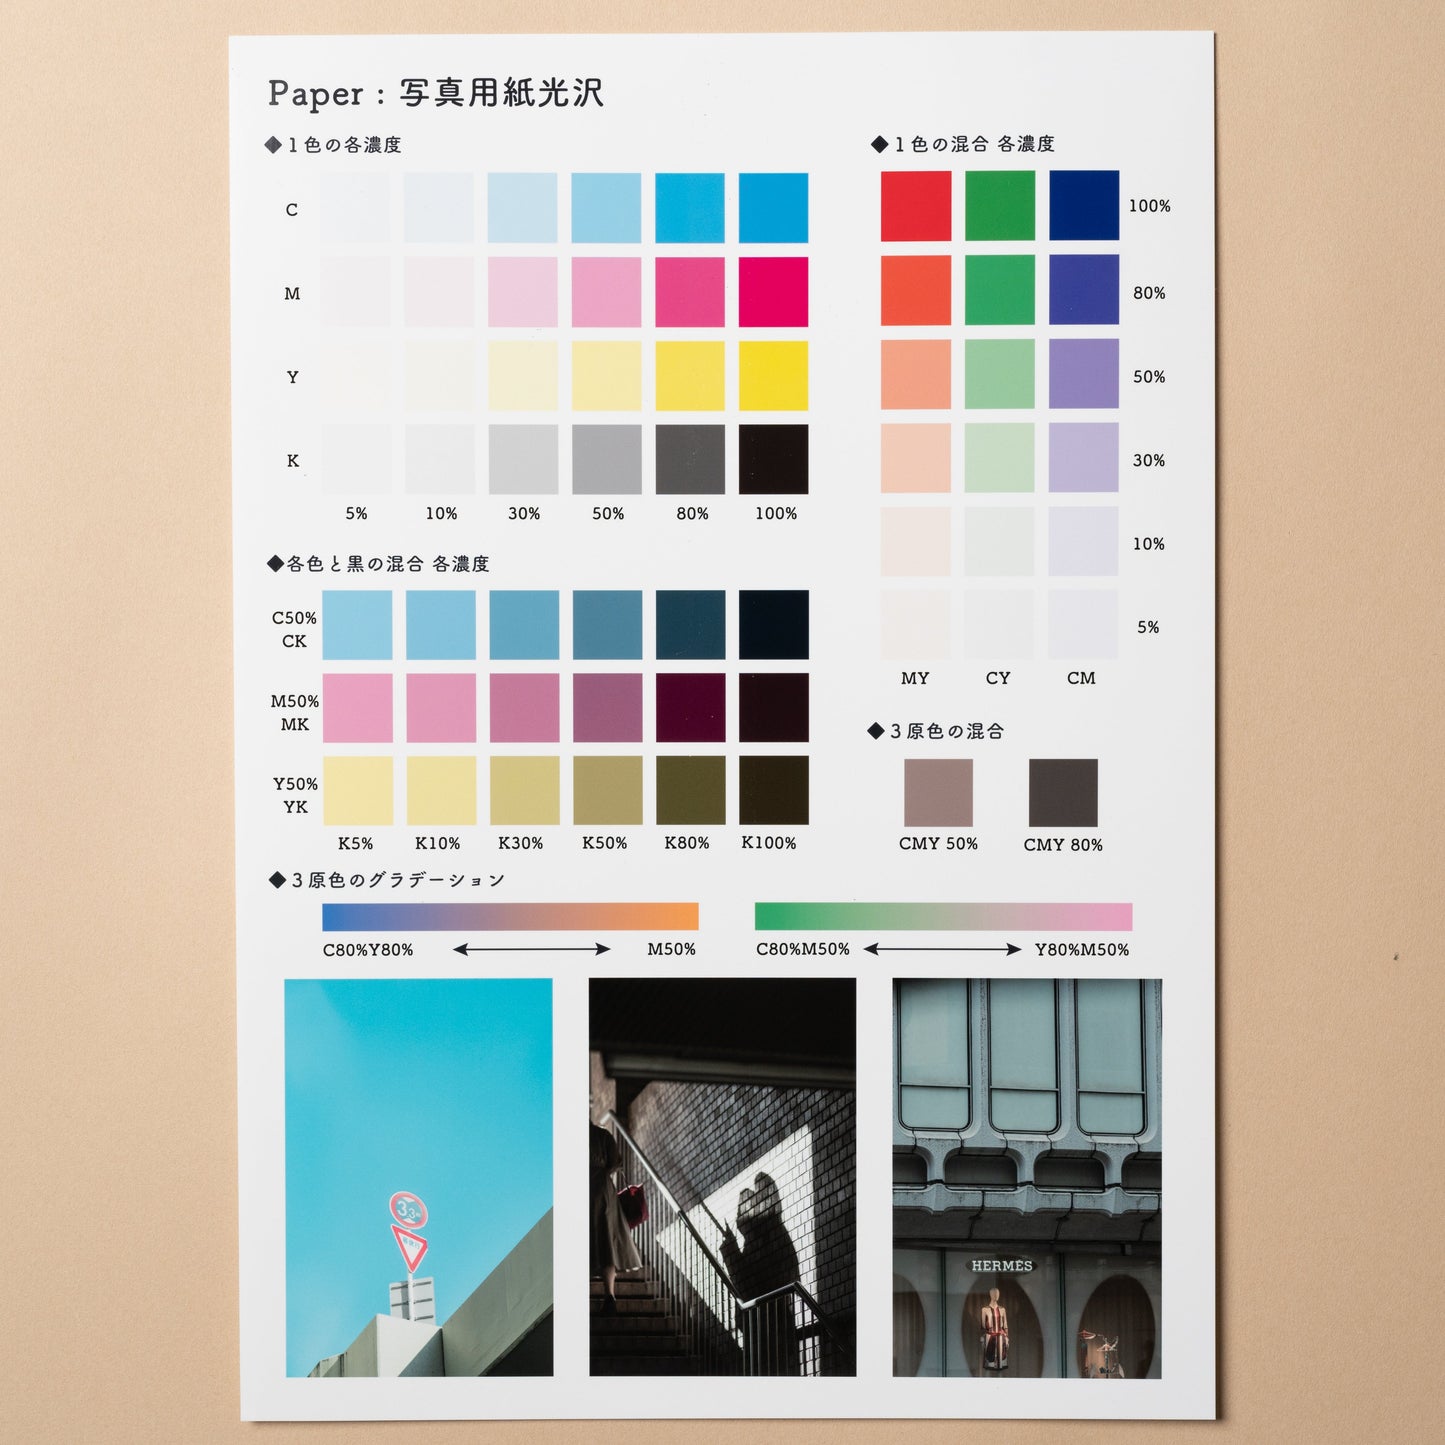 【EPSON】写真用紙光沢 - イーワン大判プリント【最大B0サイズの大判印刷サービス】